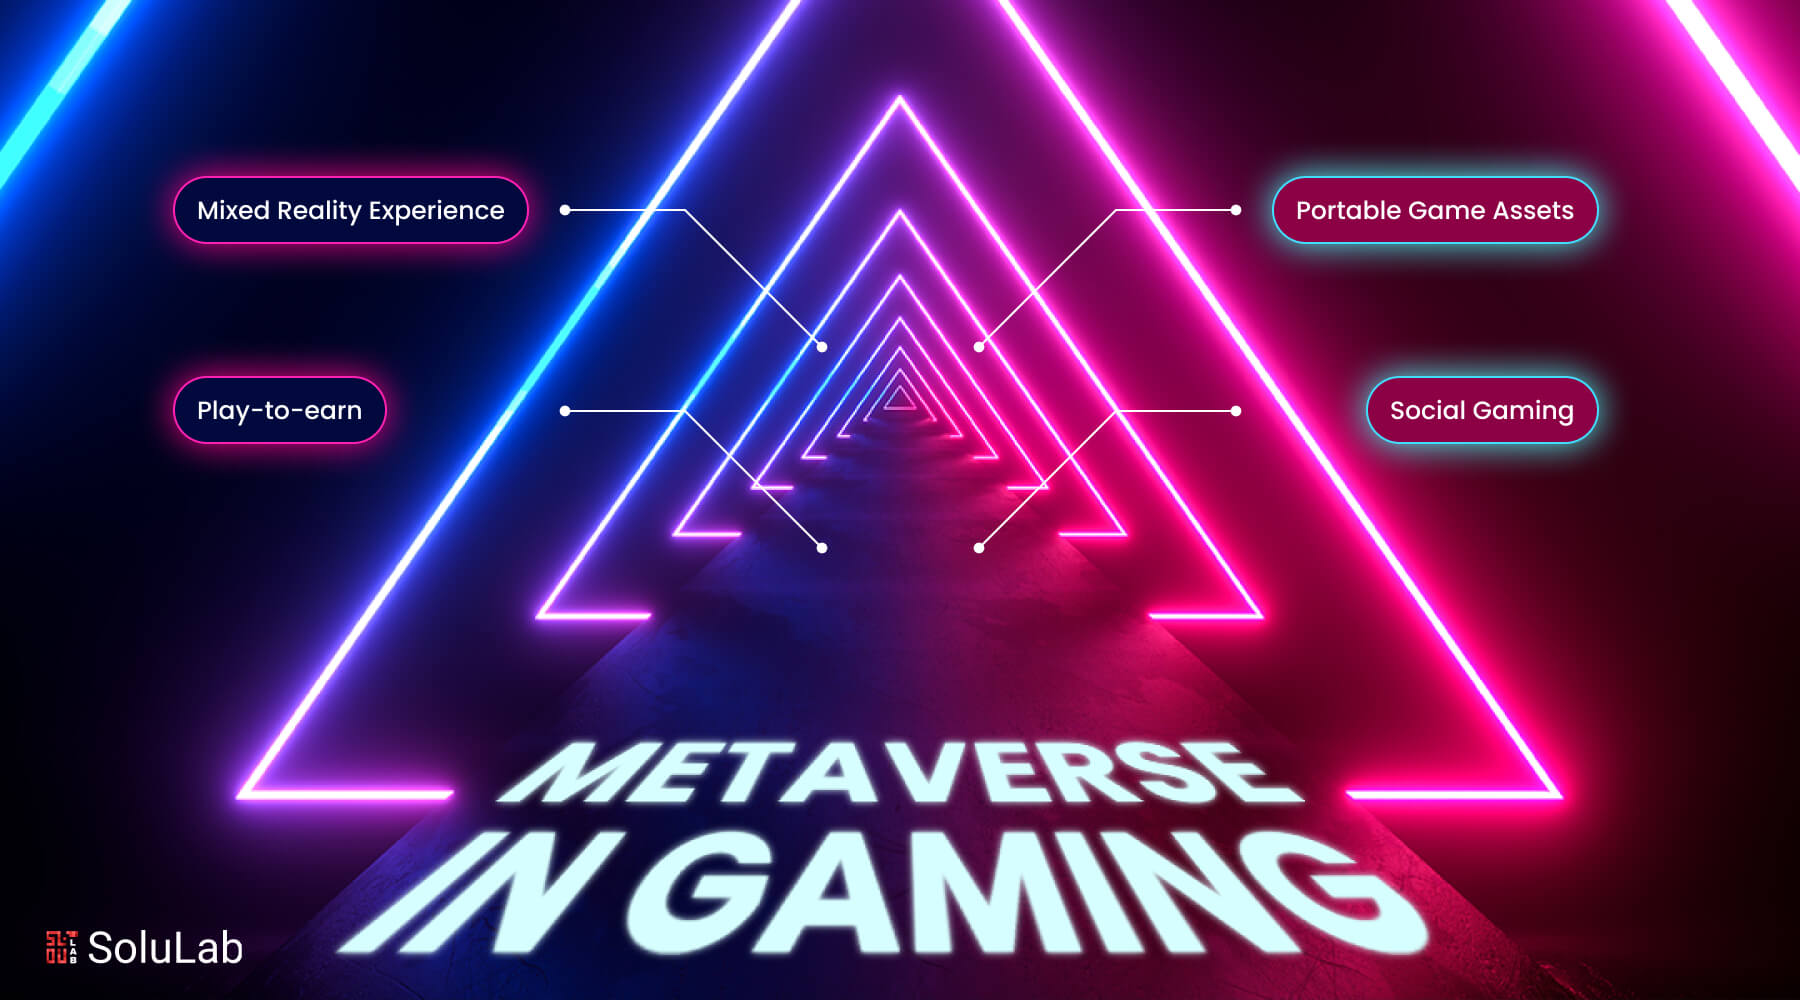 Metaverse Gaming Experience